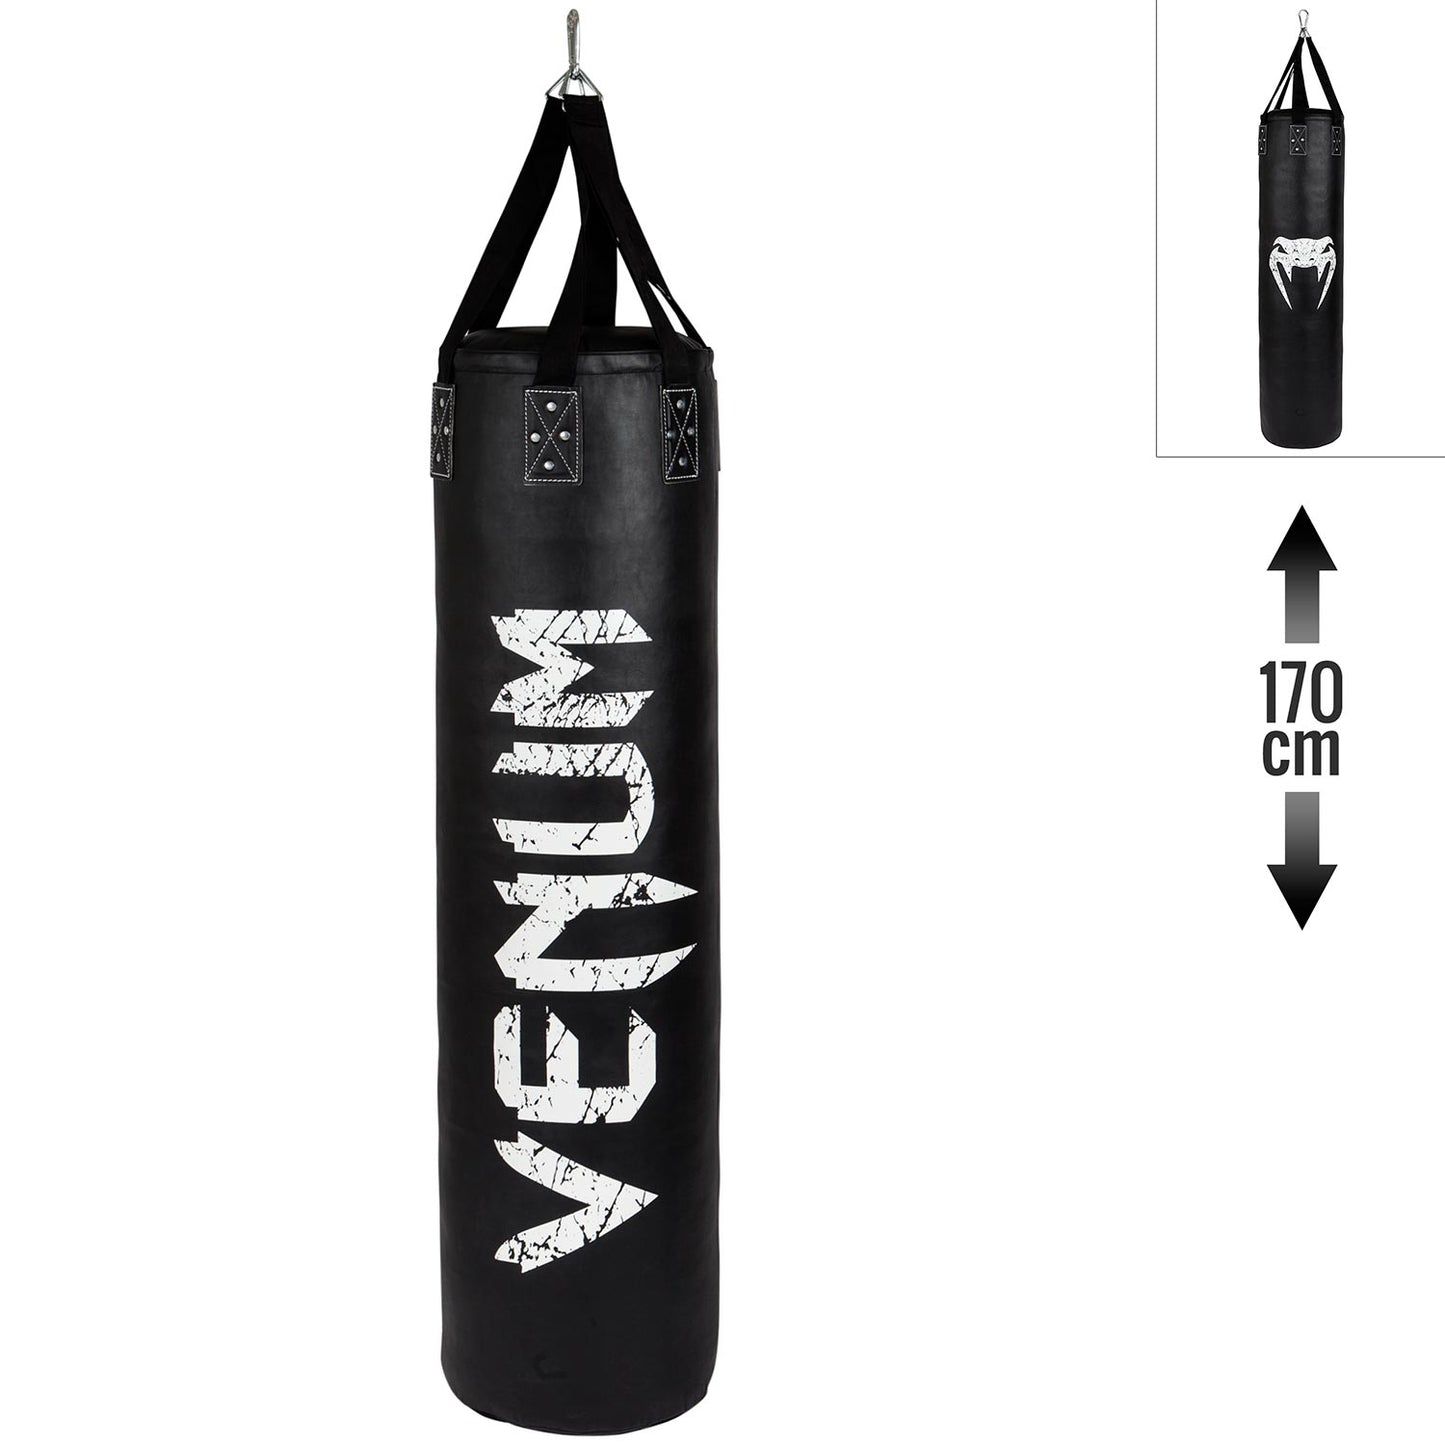 Venum Challenger Punching Bag - Black - 170 cm - Filled